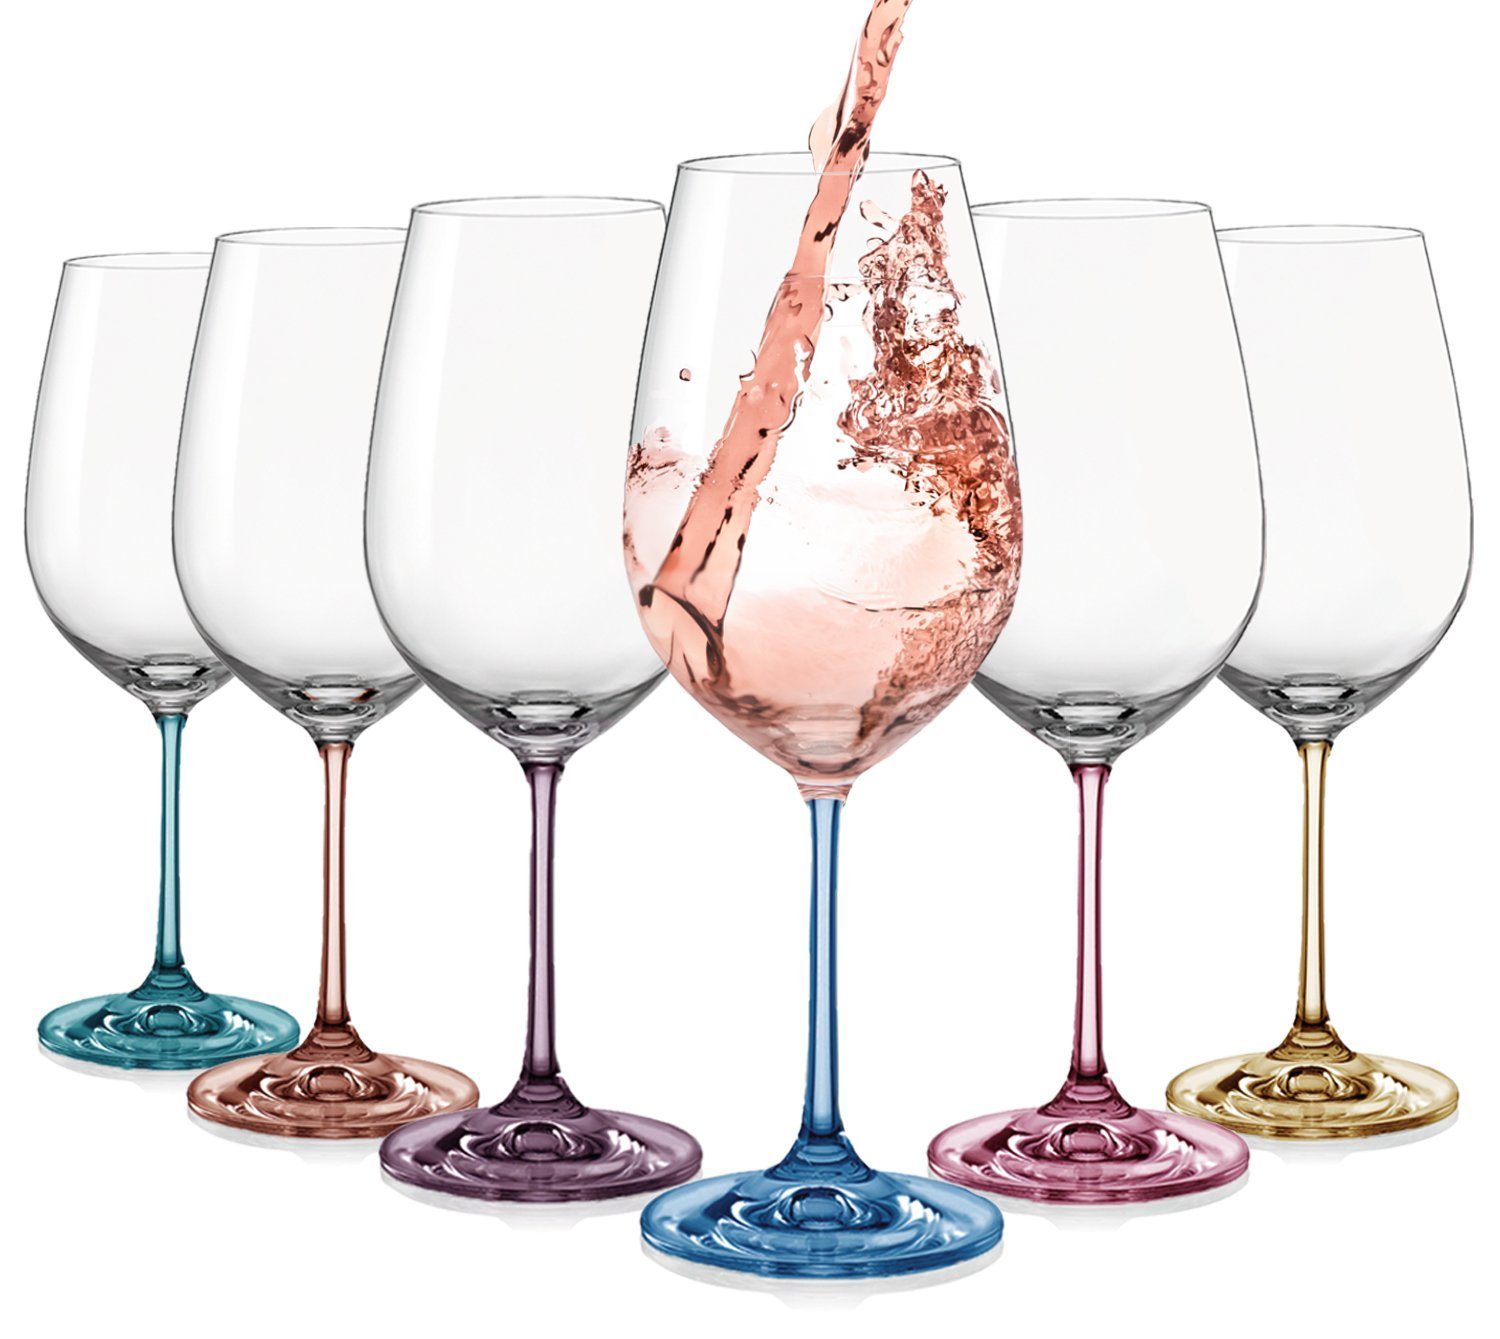 Crystalex Weißweinglas Weißweingläser Spectrum 350 ml 6er Set, Glas, mehrfarbig